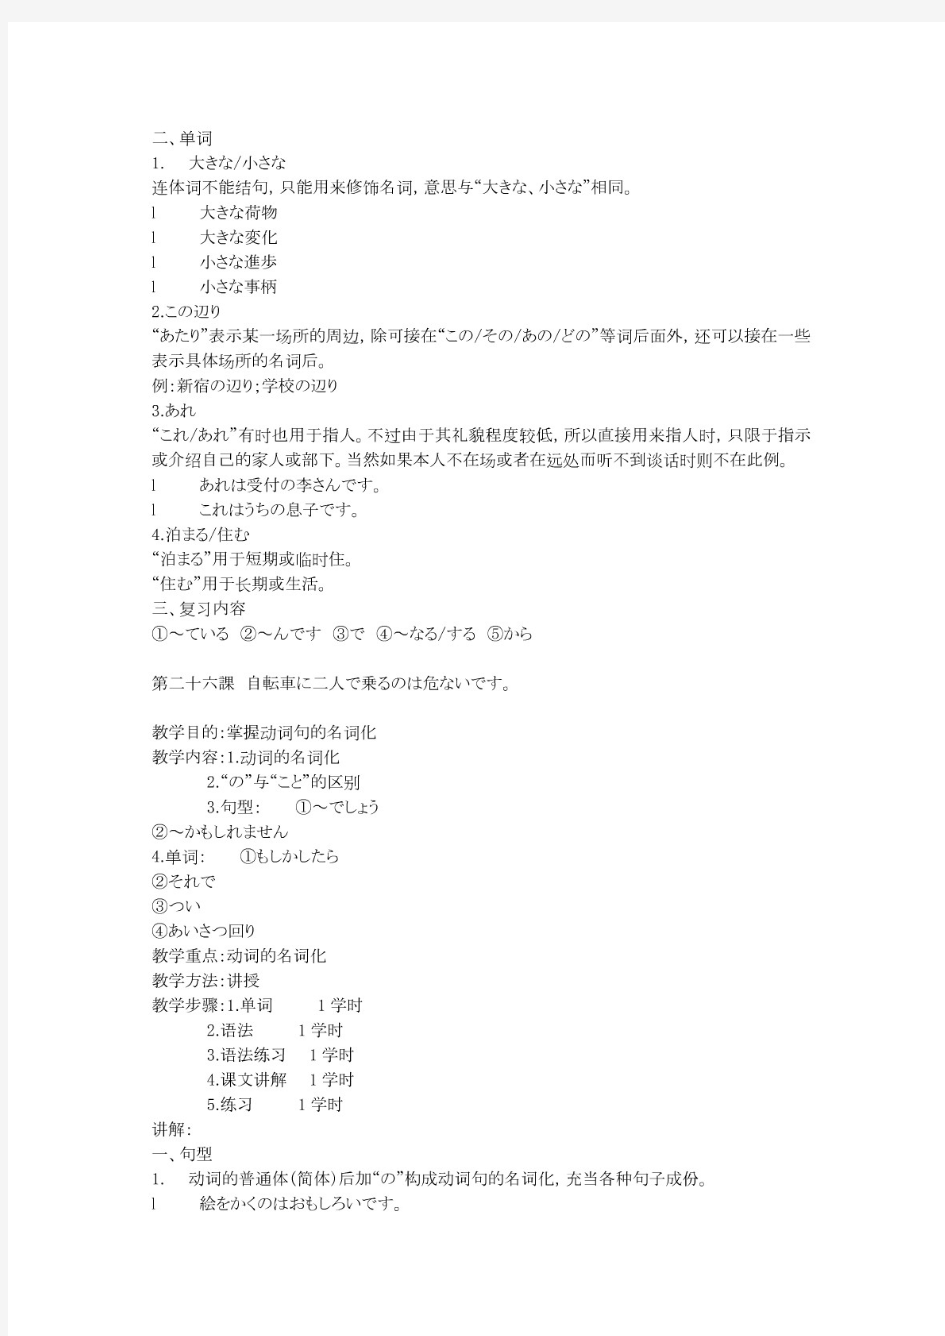 新版标准日本语(初级)下册语法-超全面